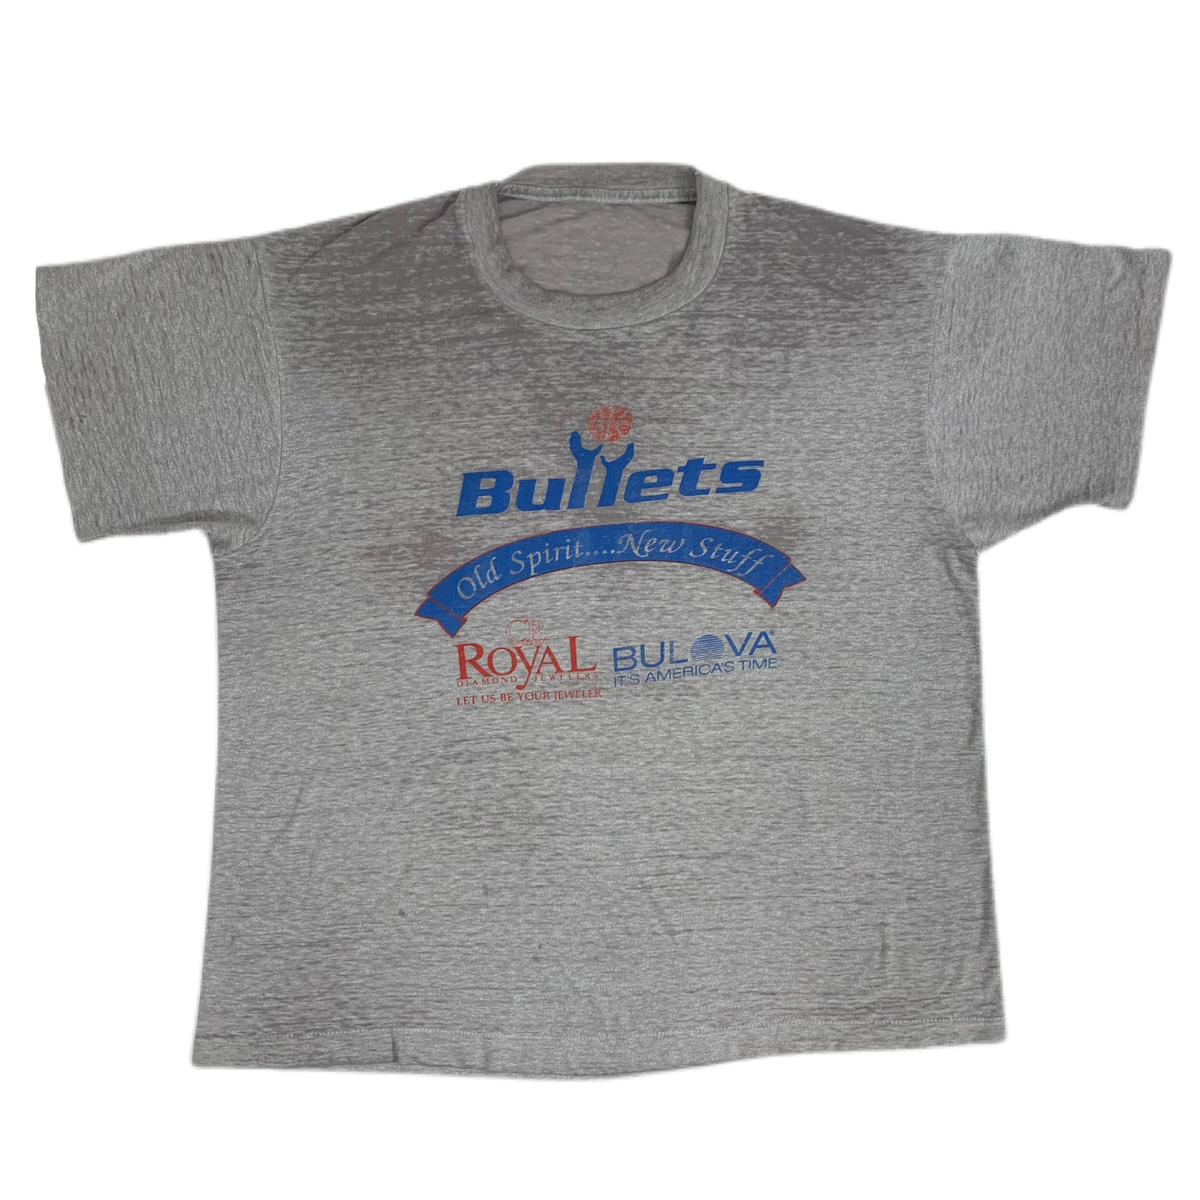 Vintage Washington Bullets &quot;Old Spirit... New Stuff&quot; T-Shirt